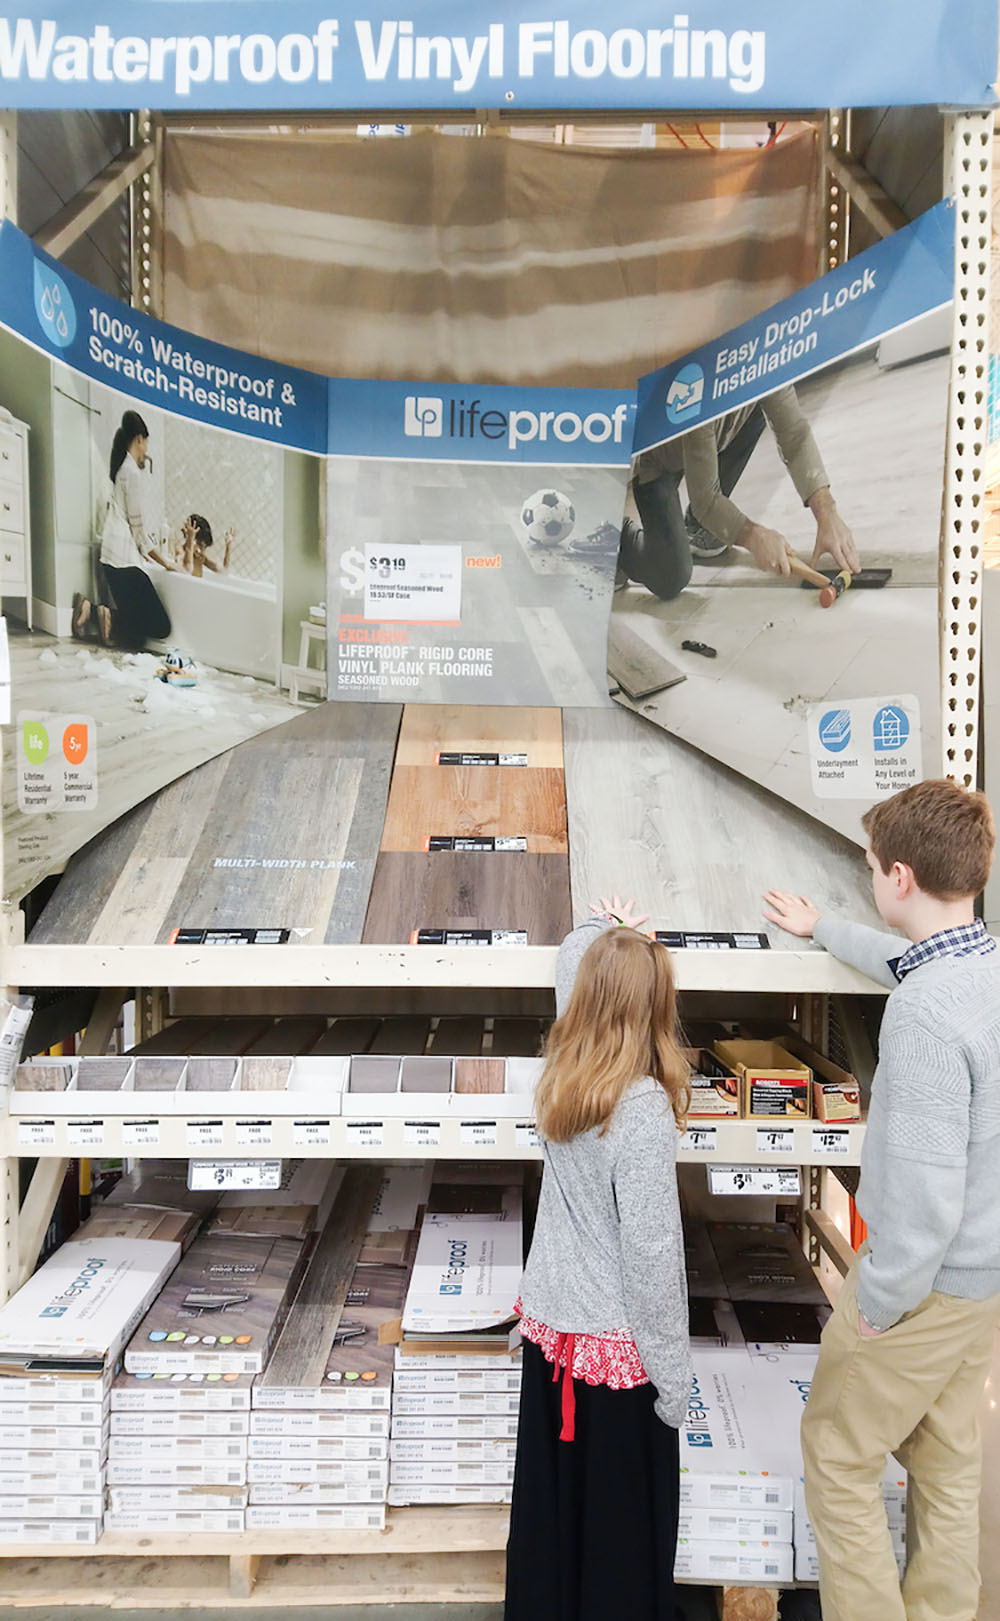 In store LifeProof flooring display